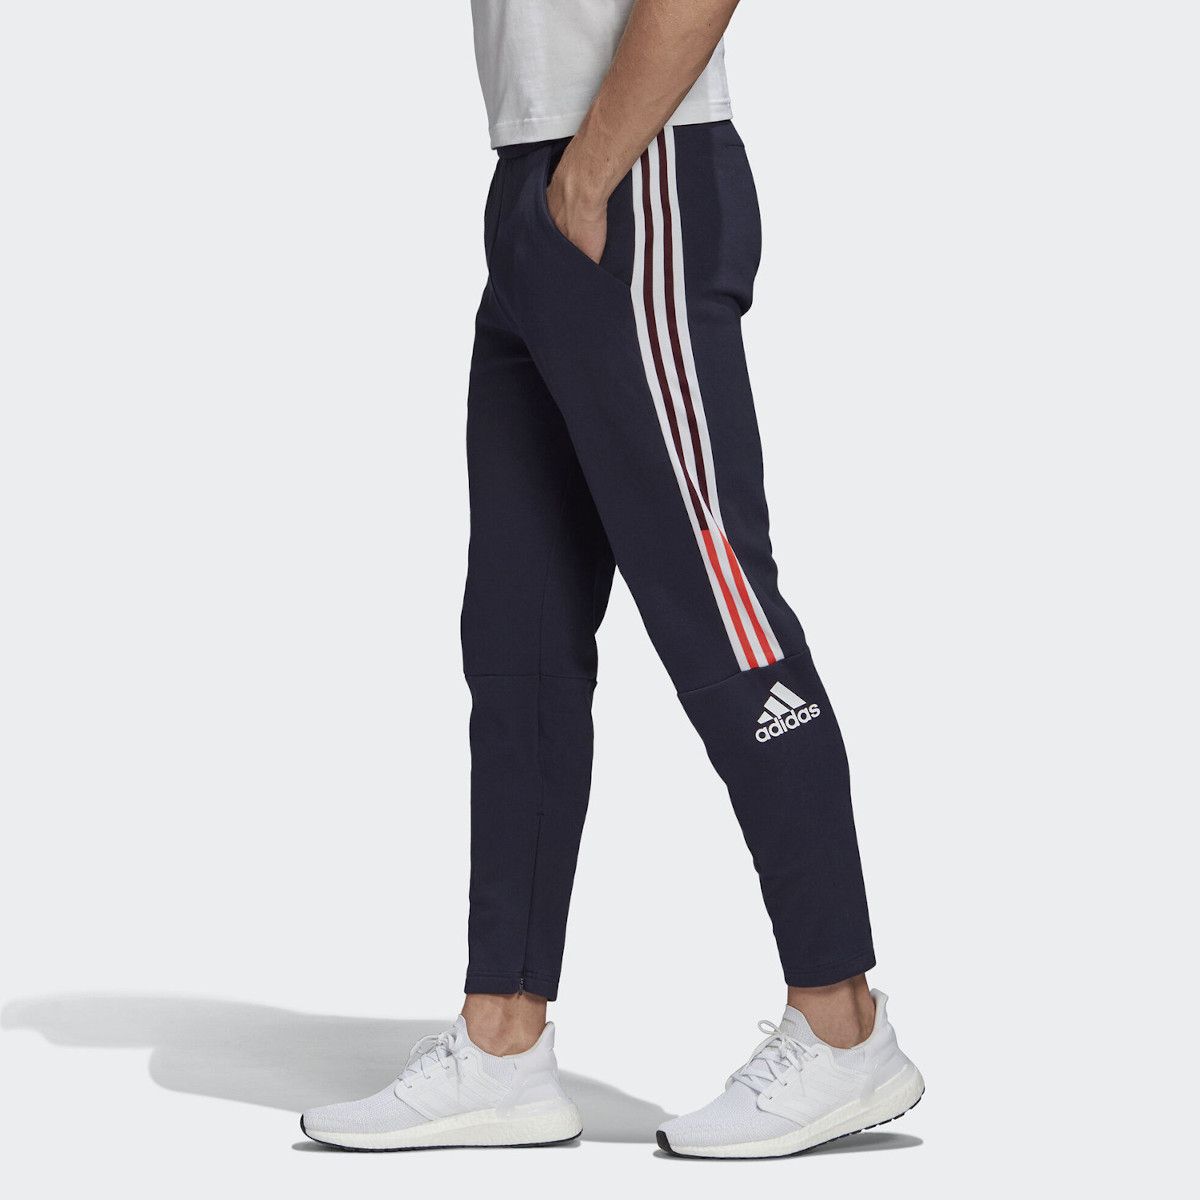 adidas Z.N.E. 3-Stripes Men's Tennis Pants FI4032